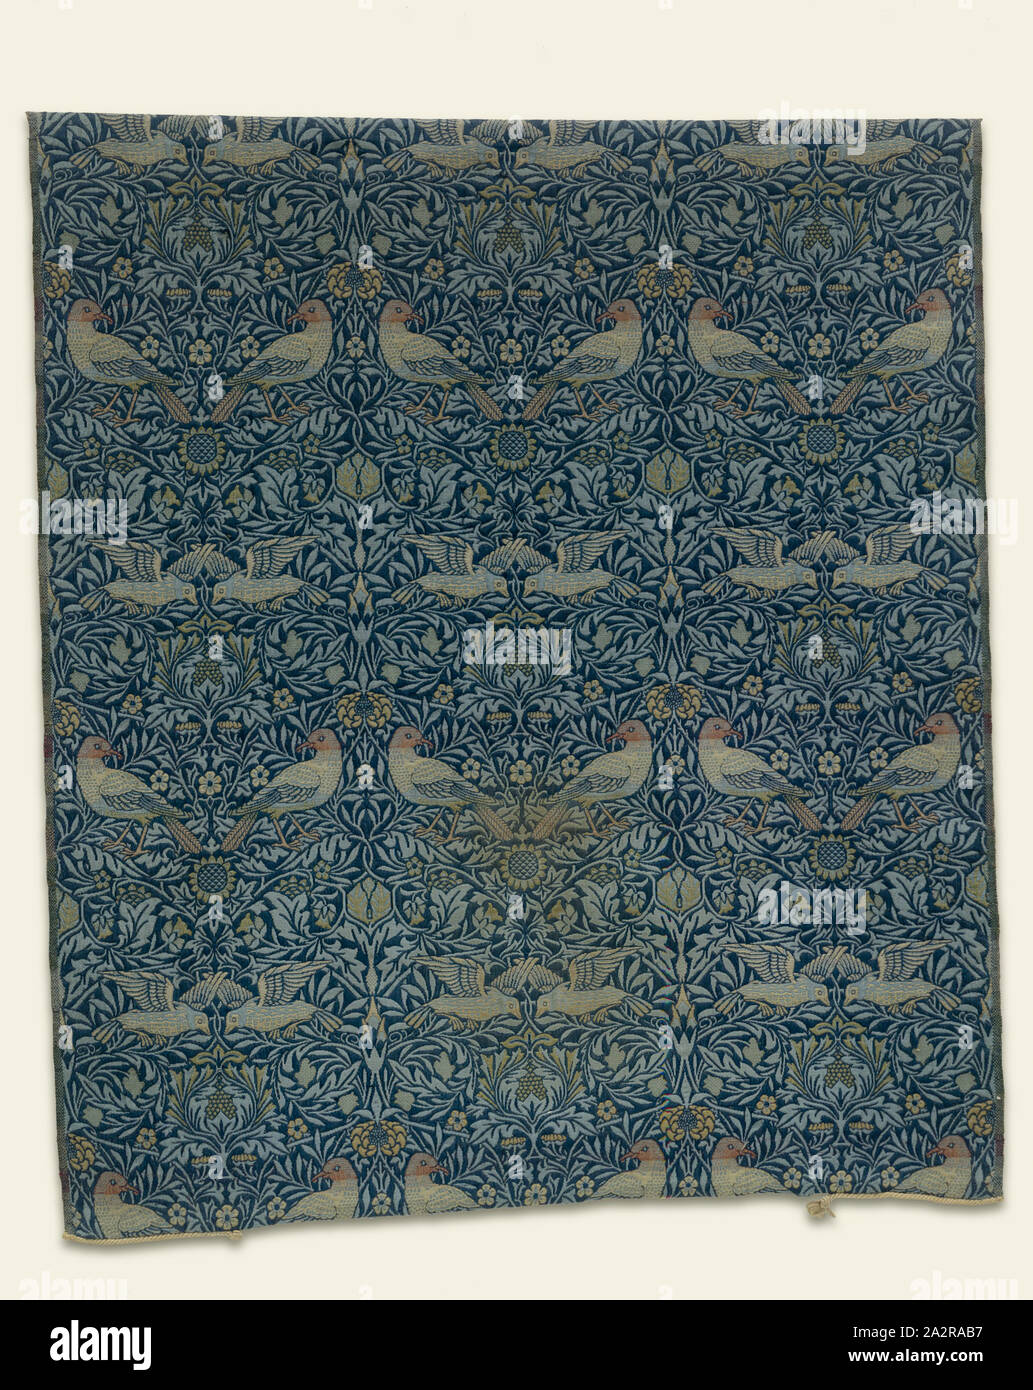 William Morris, Englisch, 1834-1896, Vogel, 1878, Kammgarn doppel Tuch, 60  x 52 1/2 in Stockfotografie - Alamy